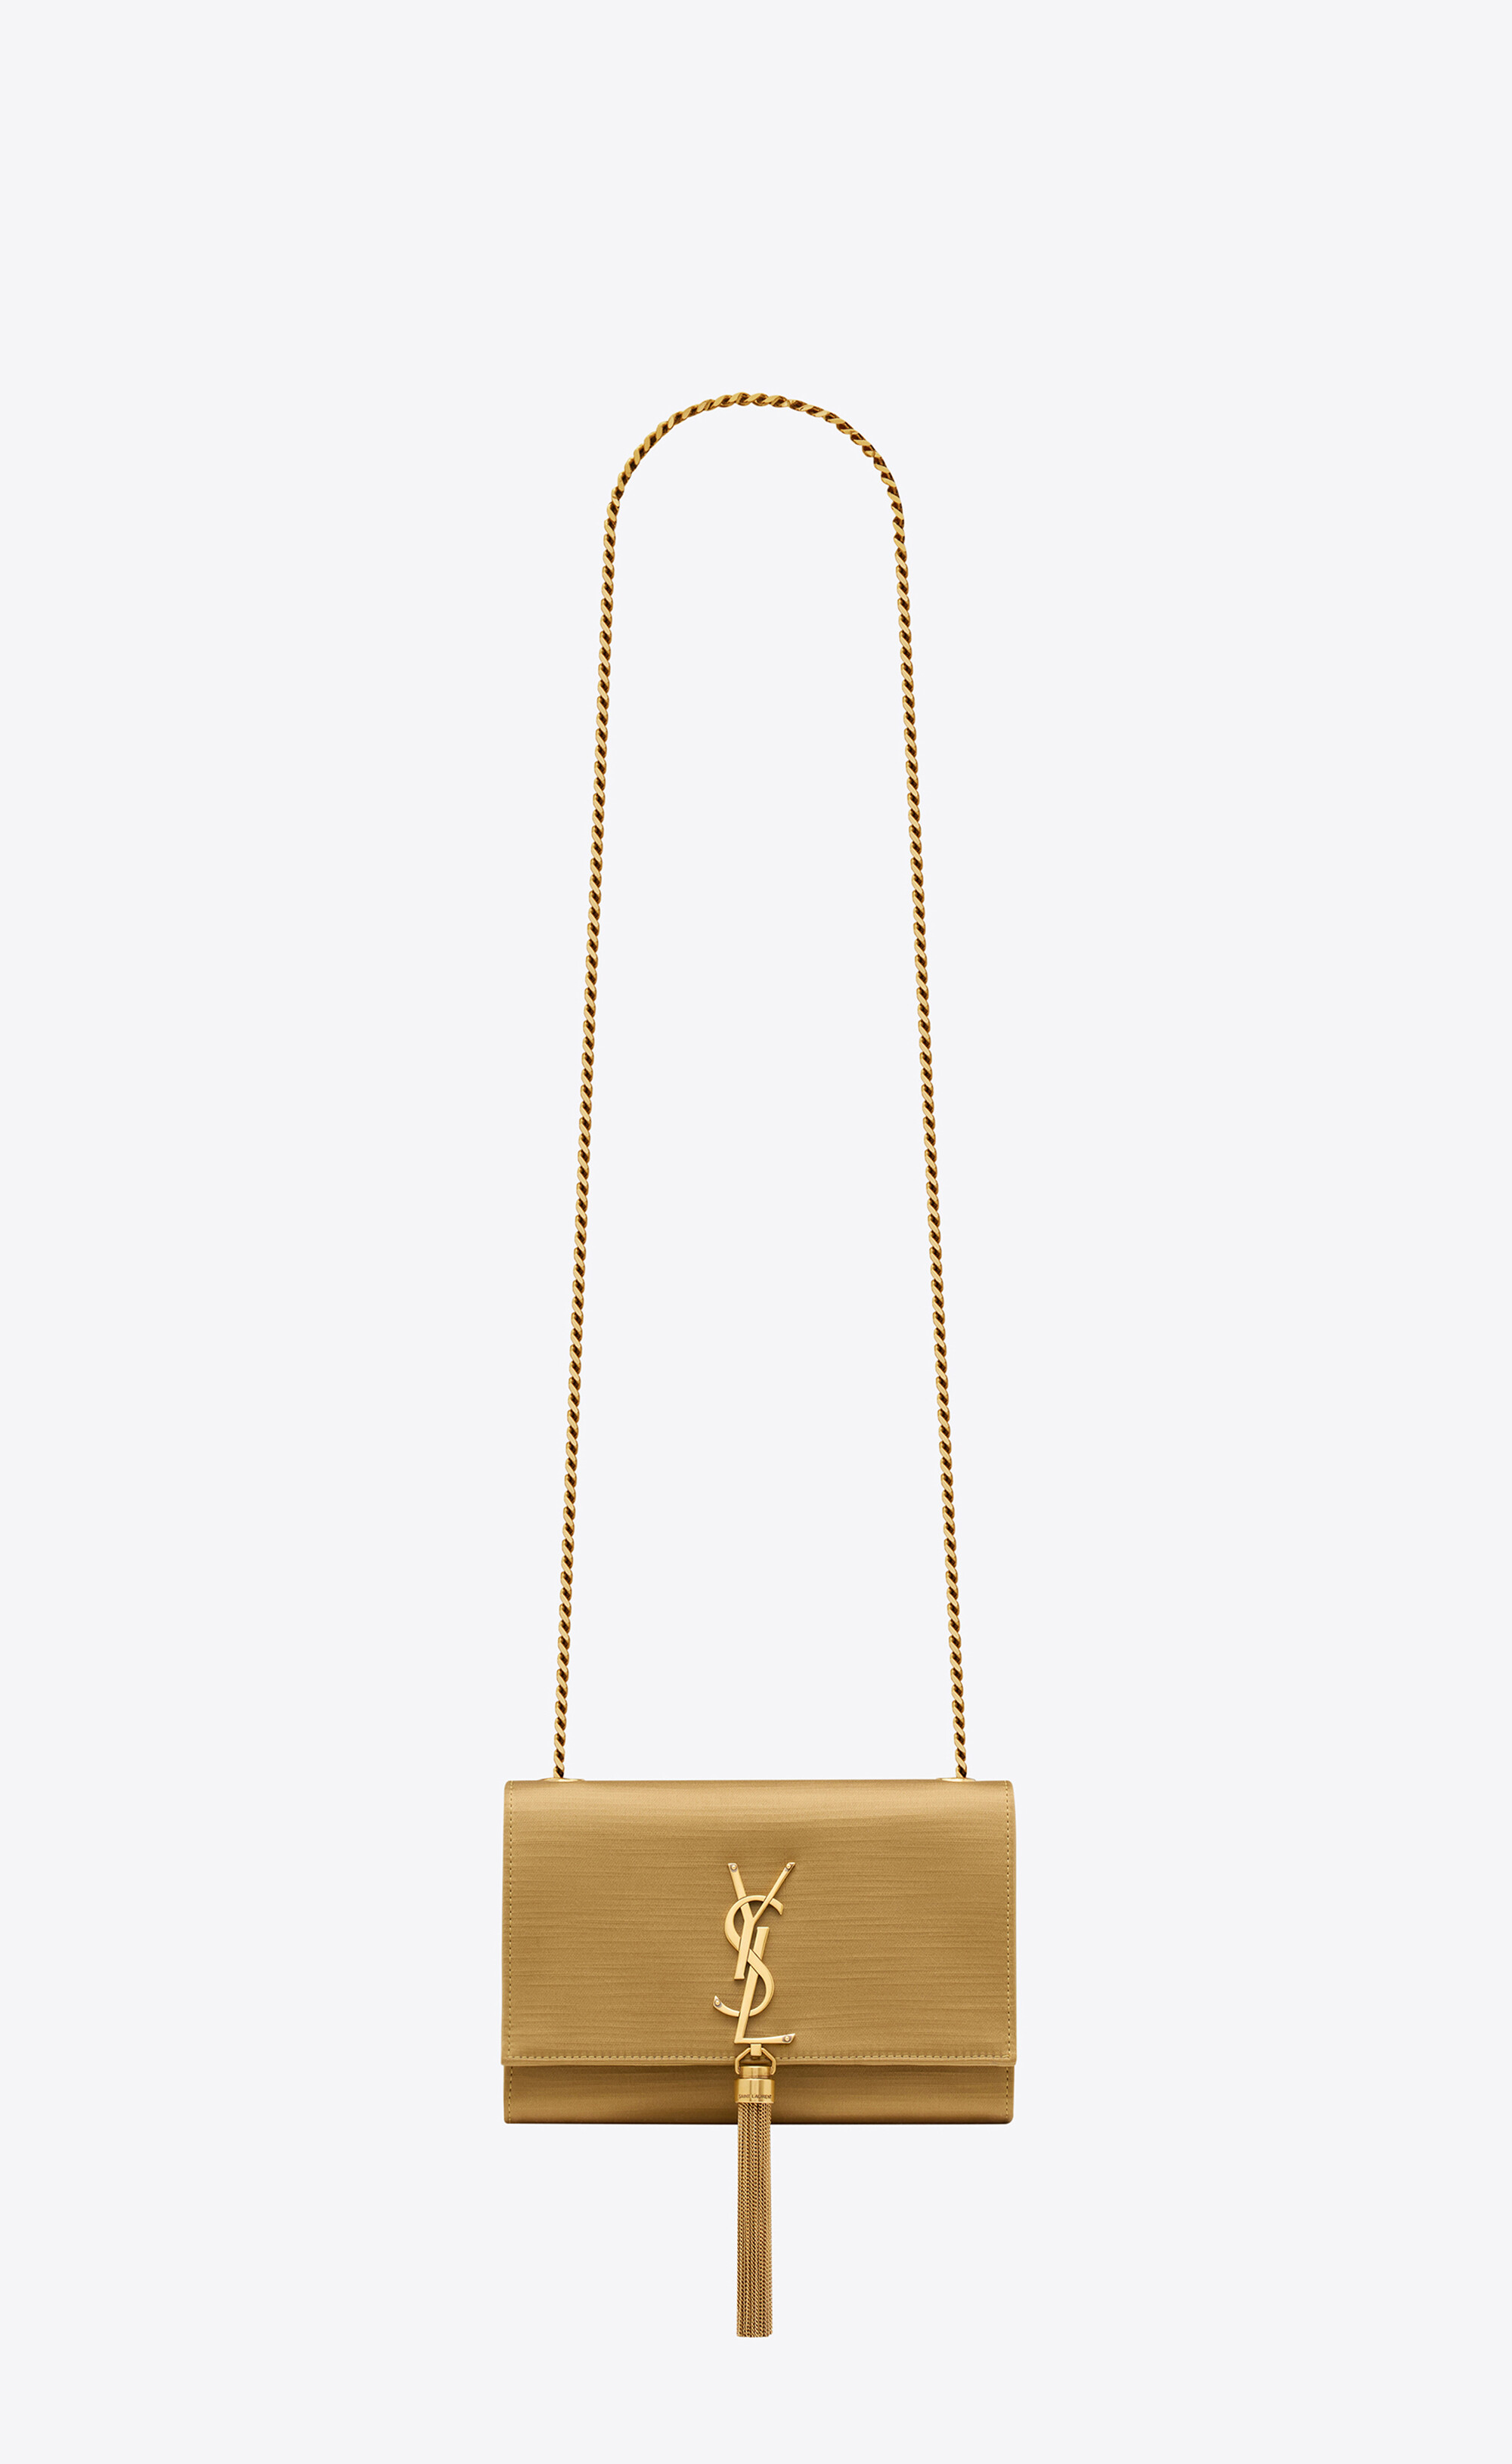 Yves Saint Laurent Gold Tassel Cross Body Bag